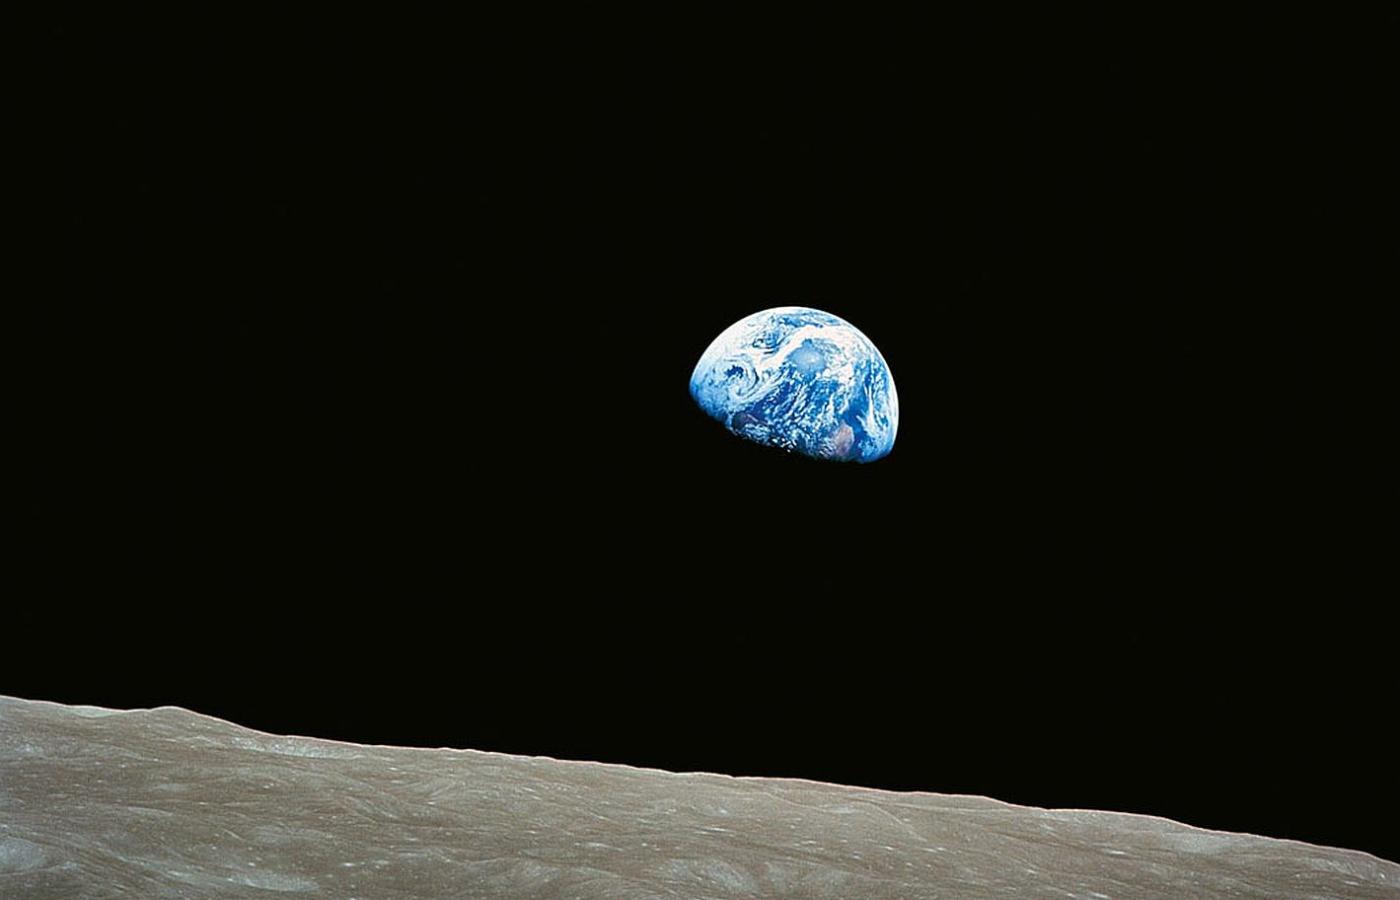 Zdjęcie Ziemi wyłaniającej się znad tarczy Księżyca. Wykonane przez Williama Andersa ze statku Apollo 8.